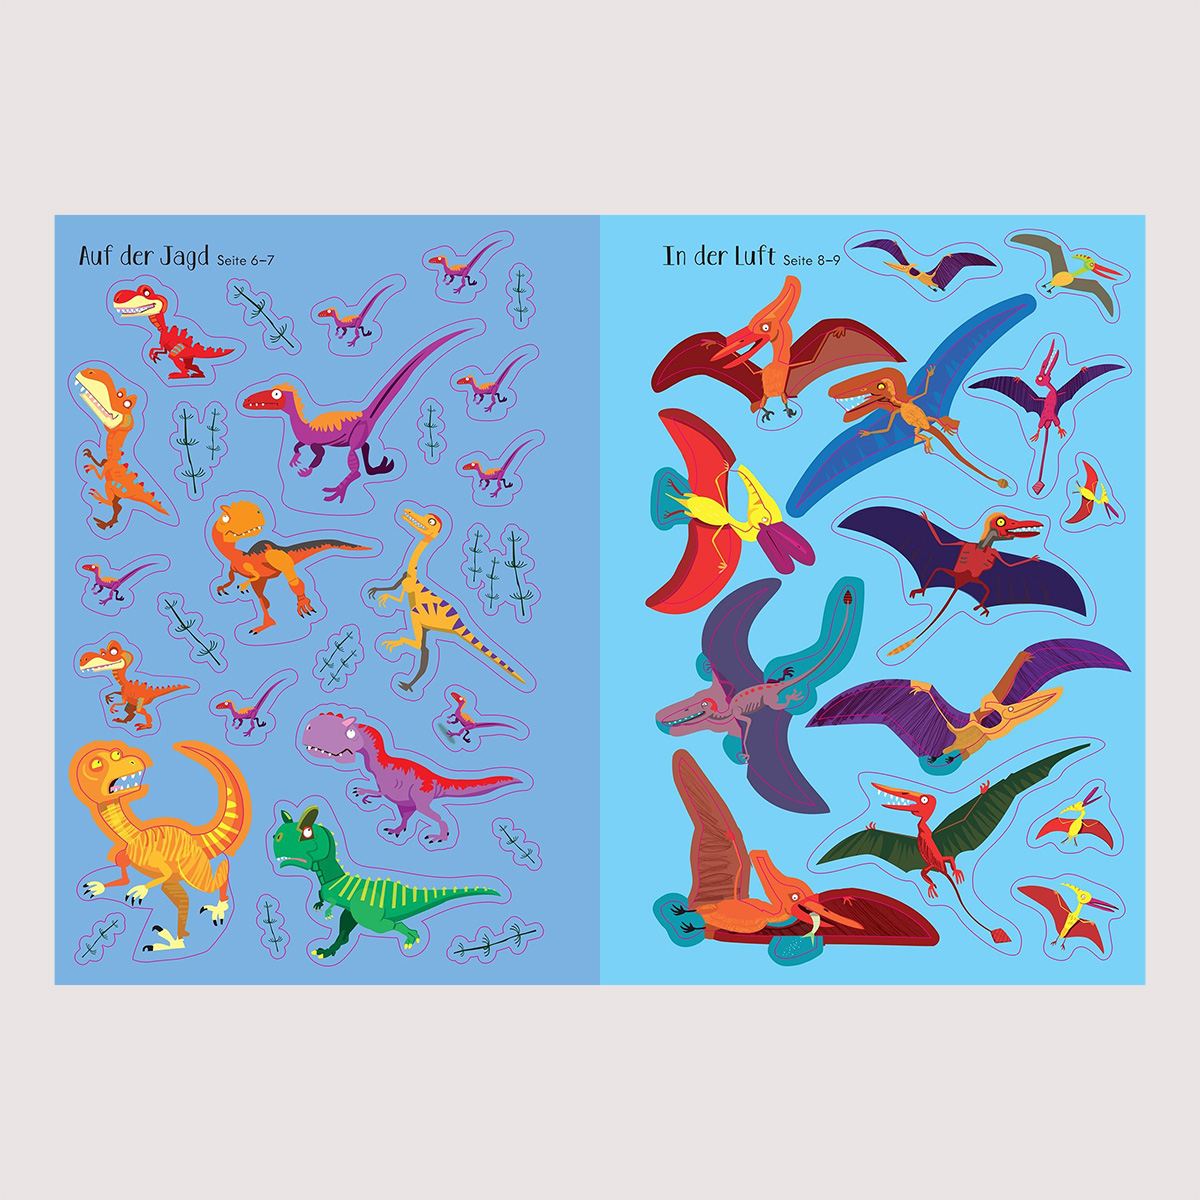 Mein Immer-wieder-Stickerbuch Dinosaurier